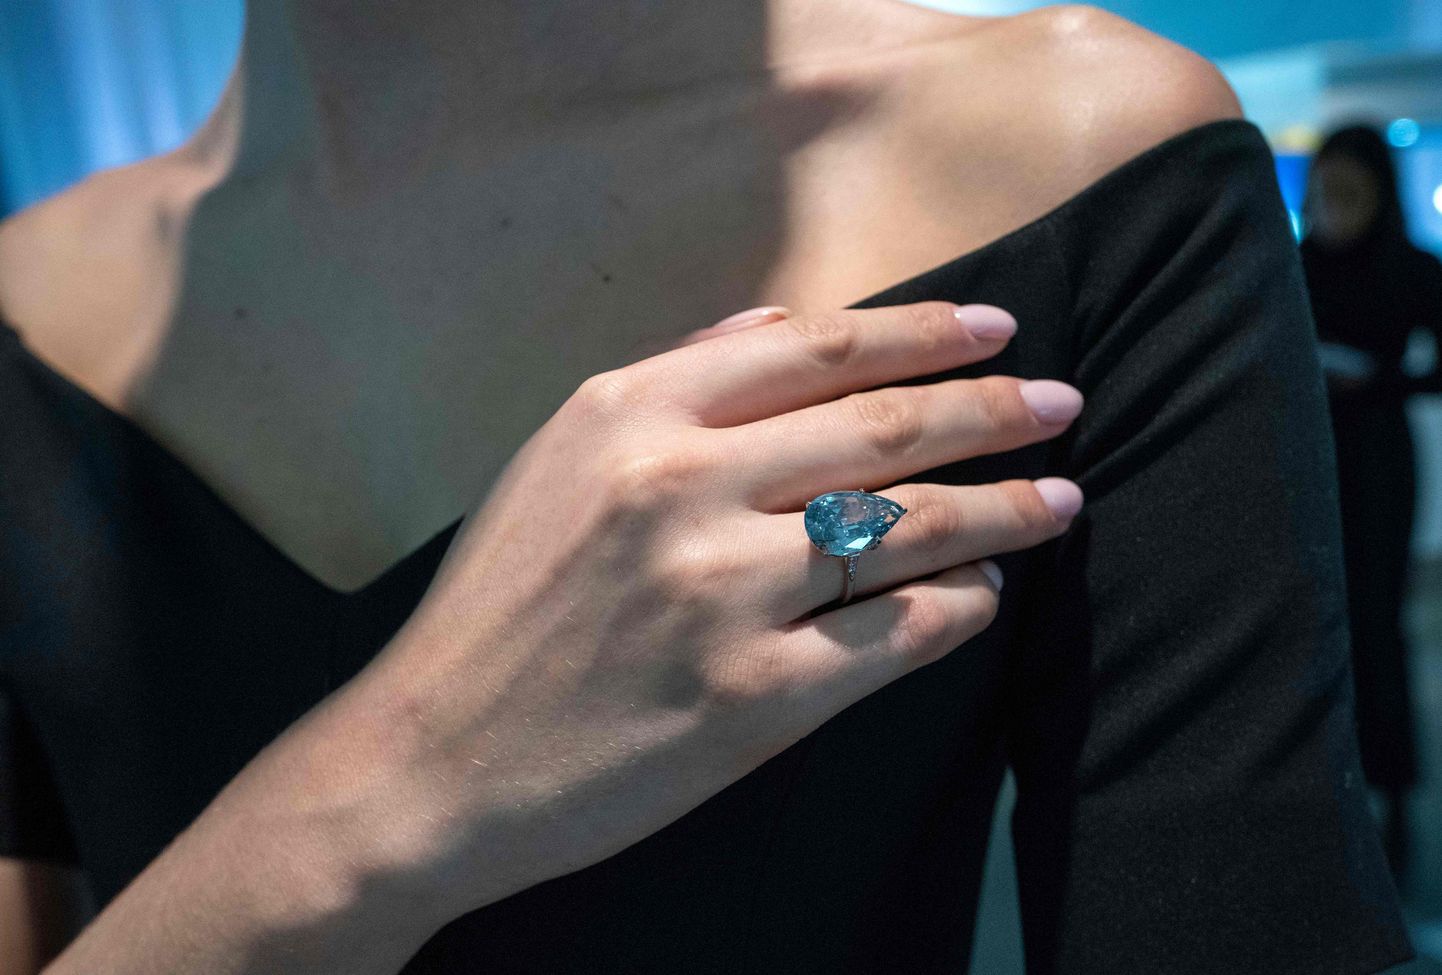 10 karātu zilā dimanta gredzens, kas piederējis Frenka Sinatras sievai